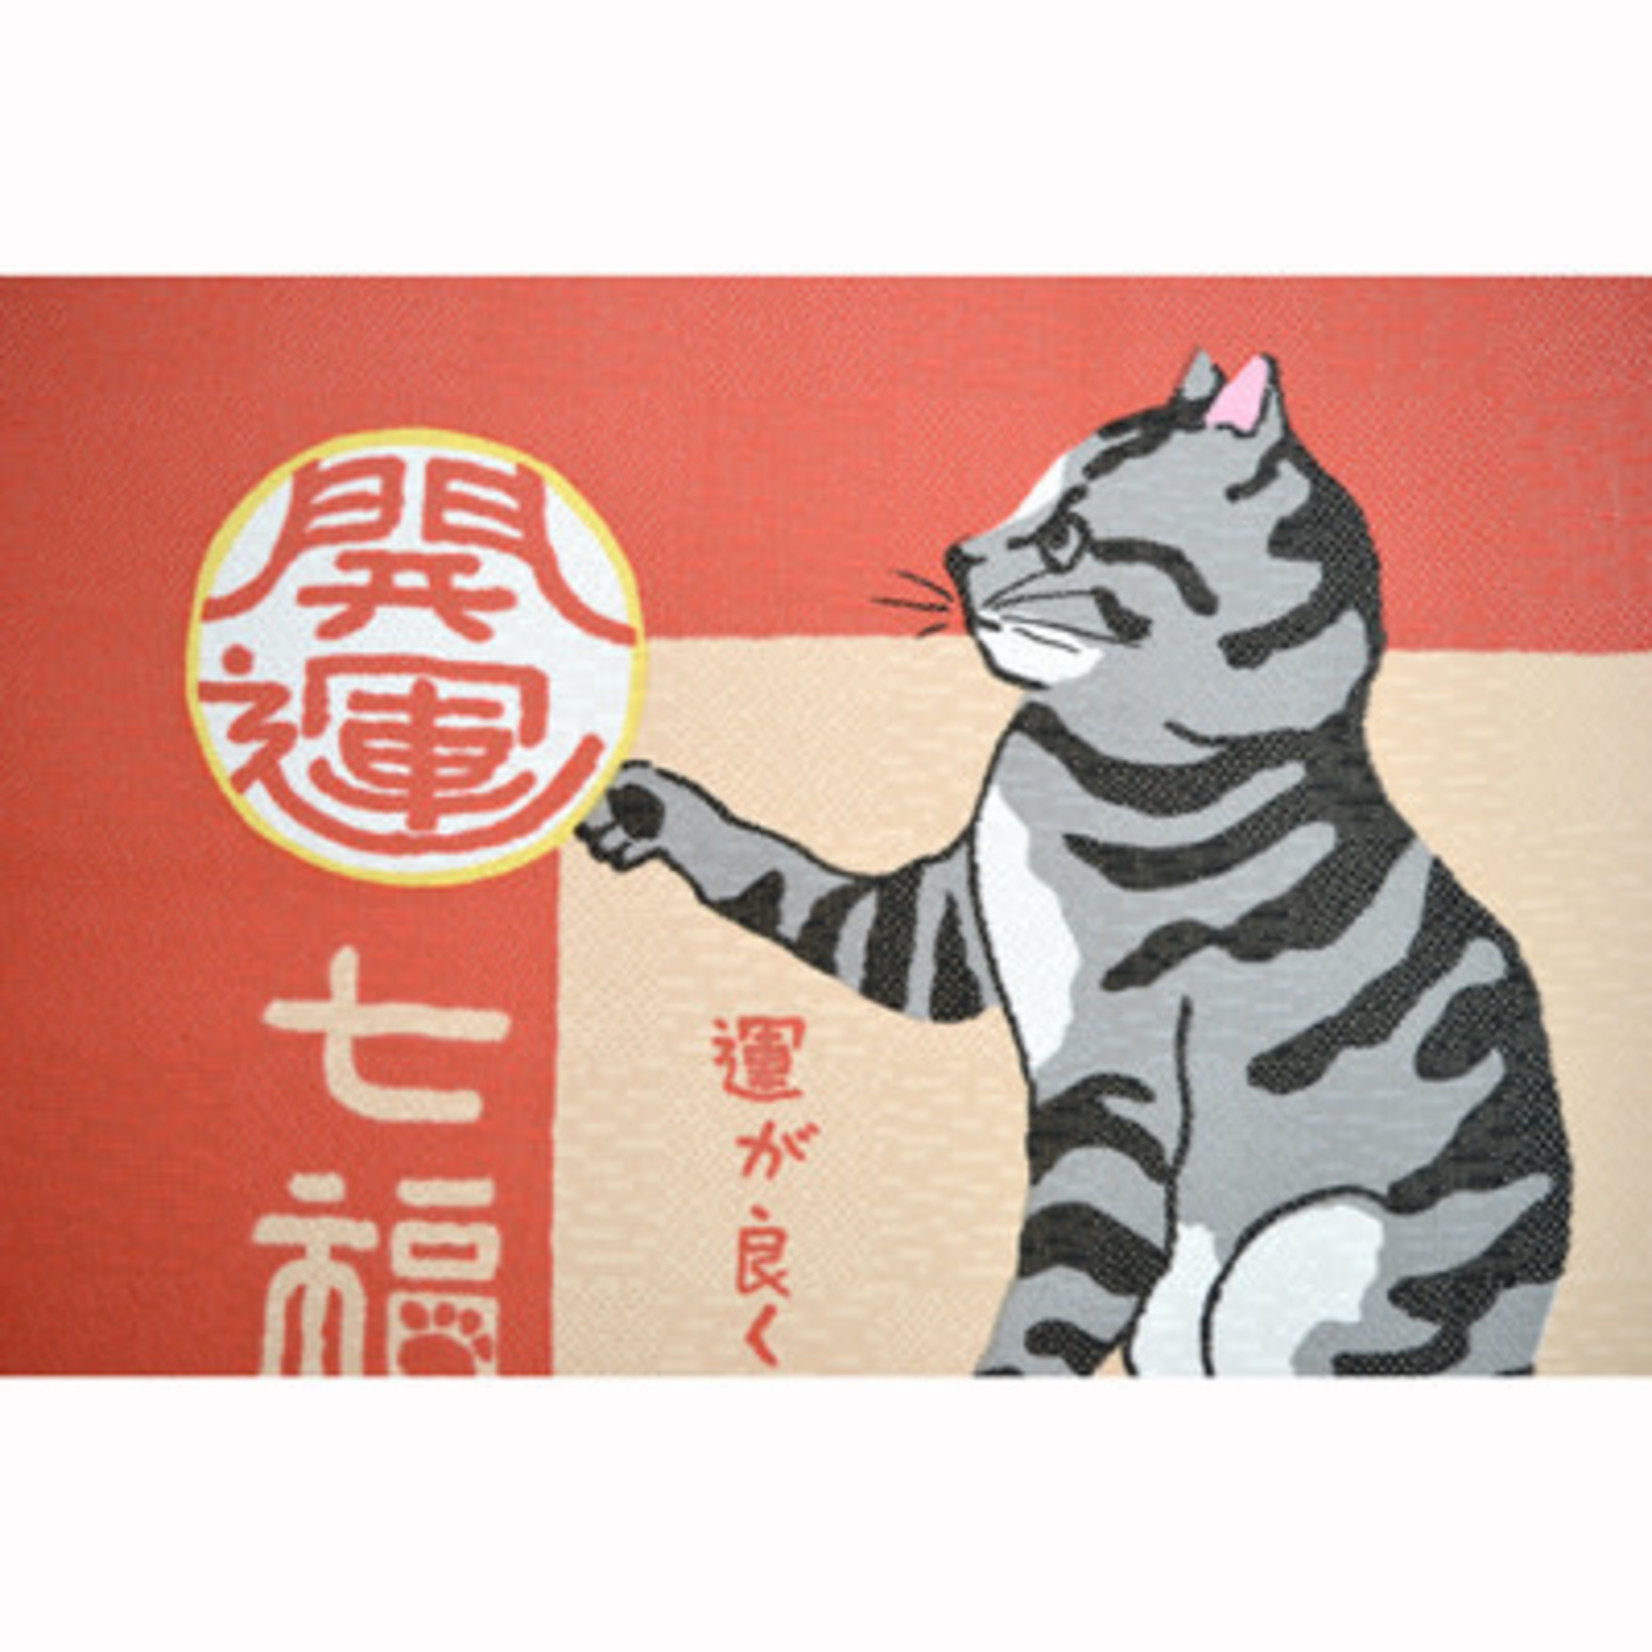 Noren - Neko (cat) Collage - 10342